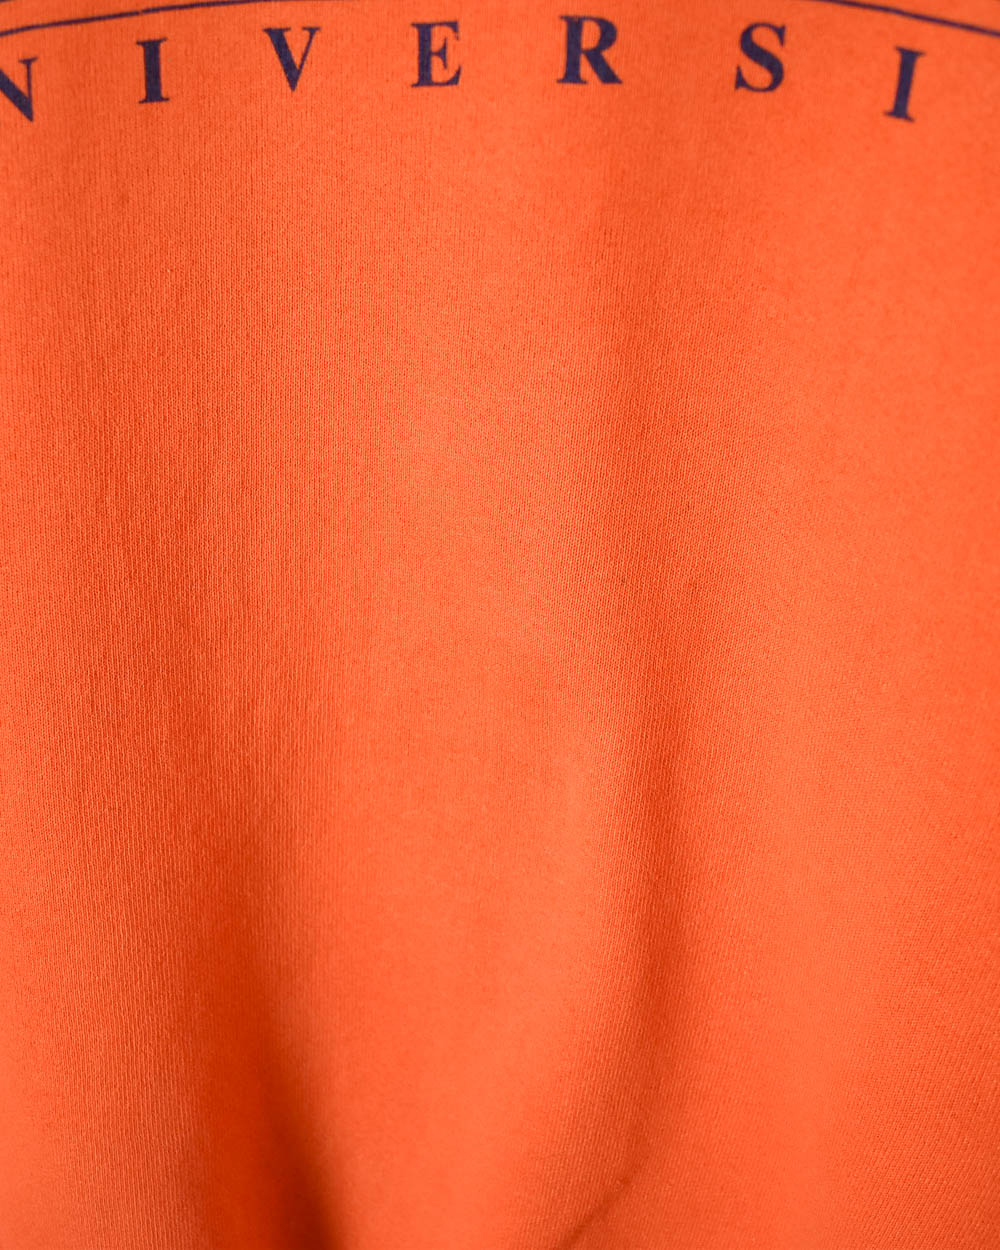 Orange Fruit of The Loom Syracuse University Sweatshirt - Large